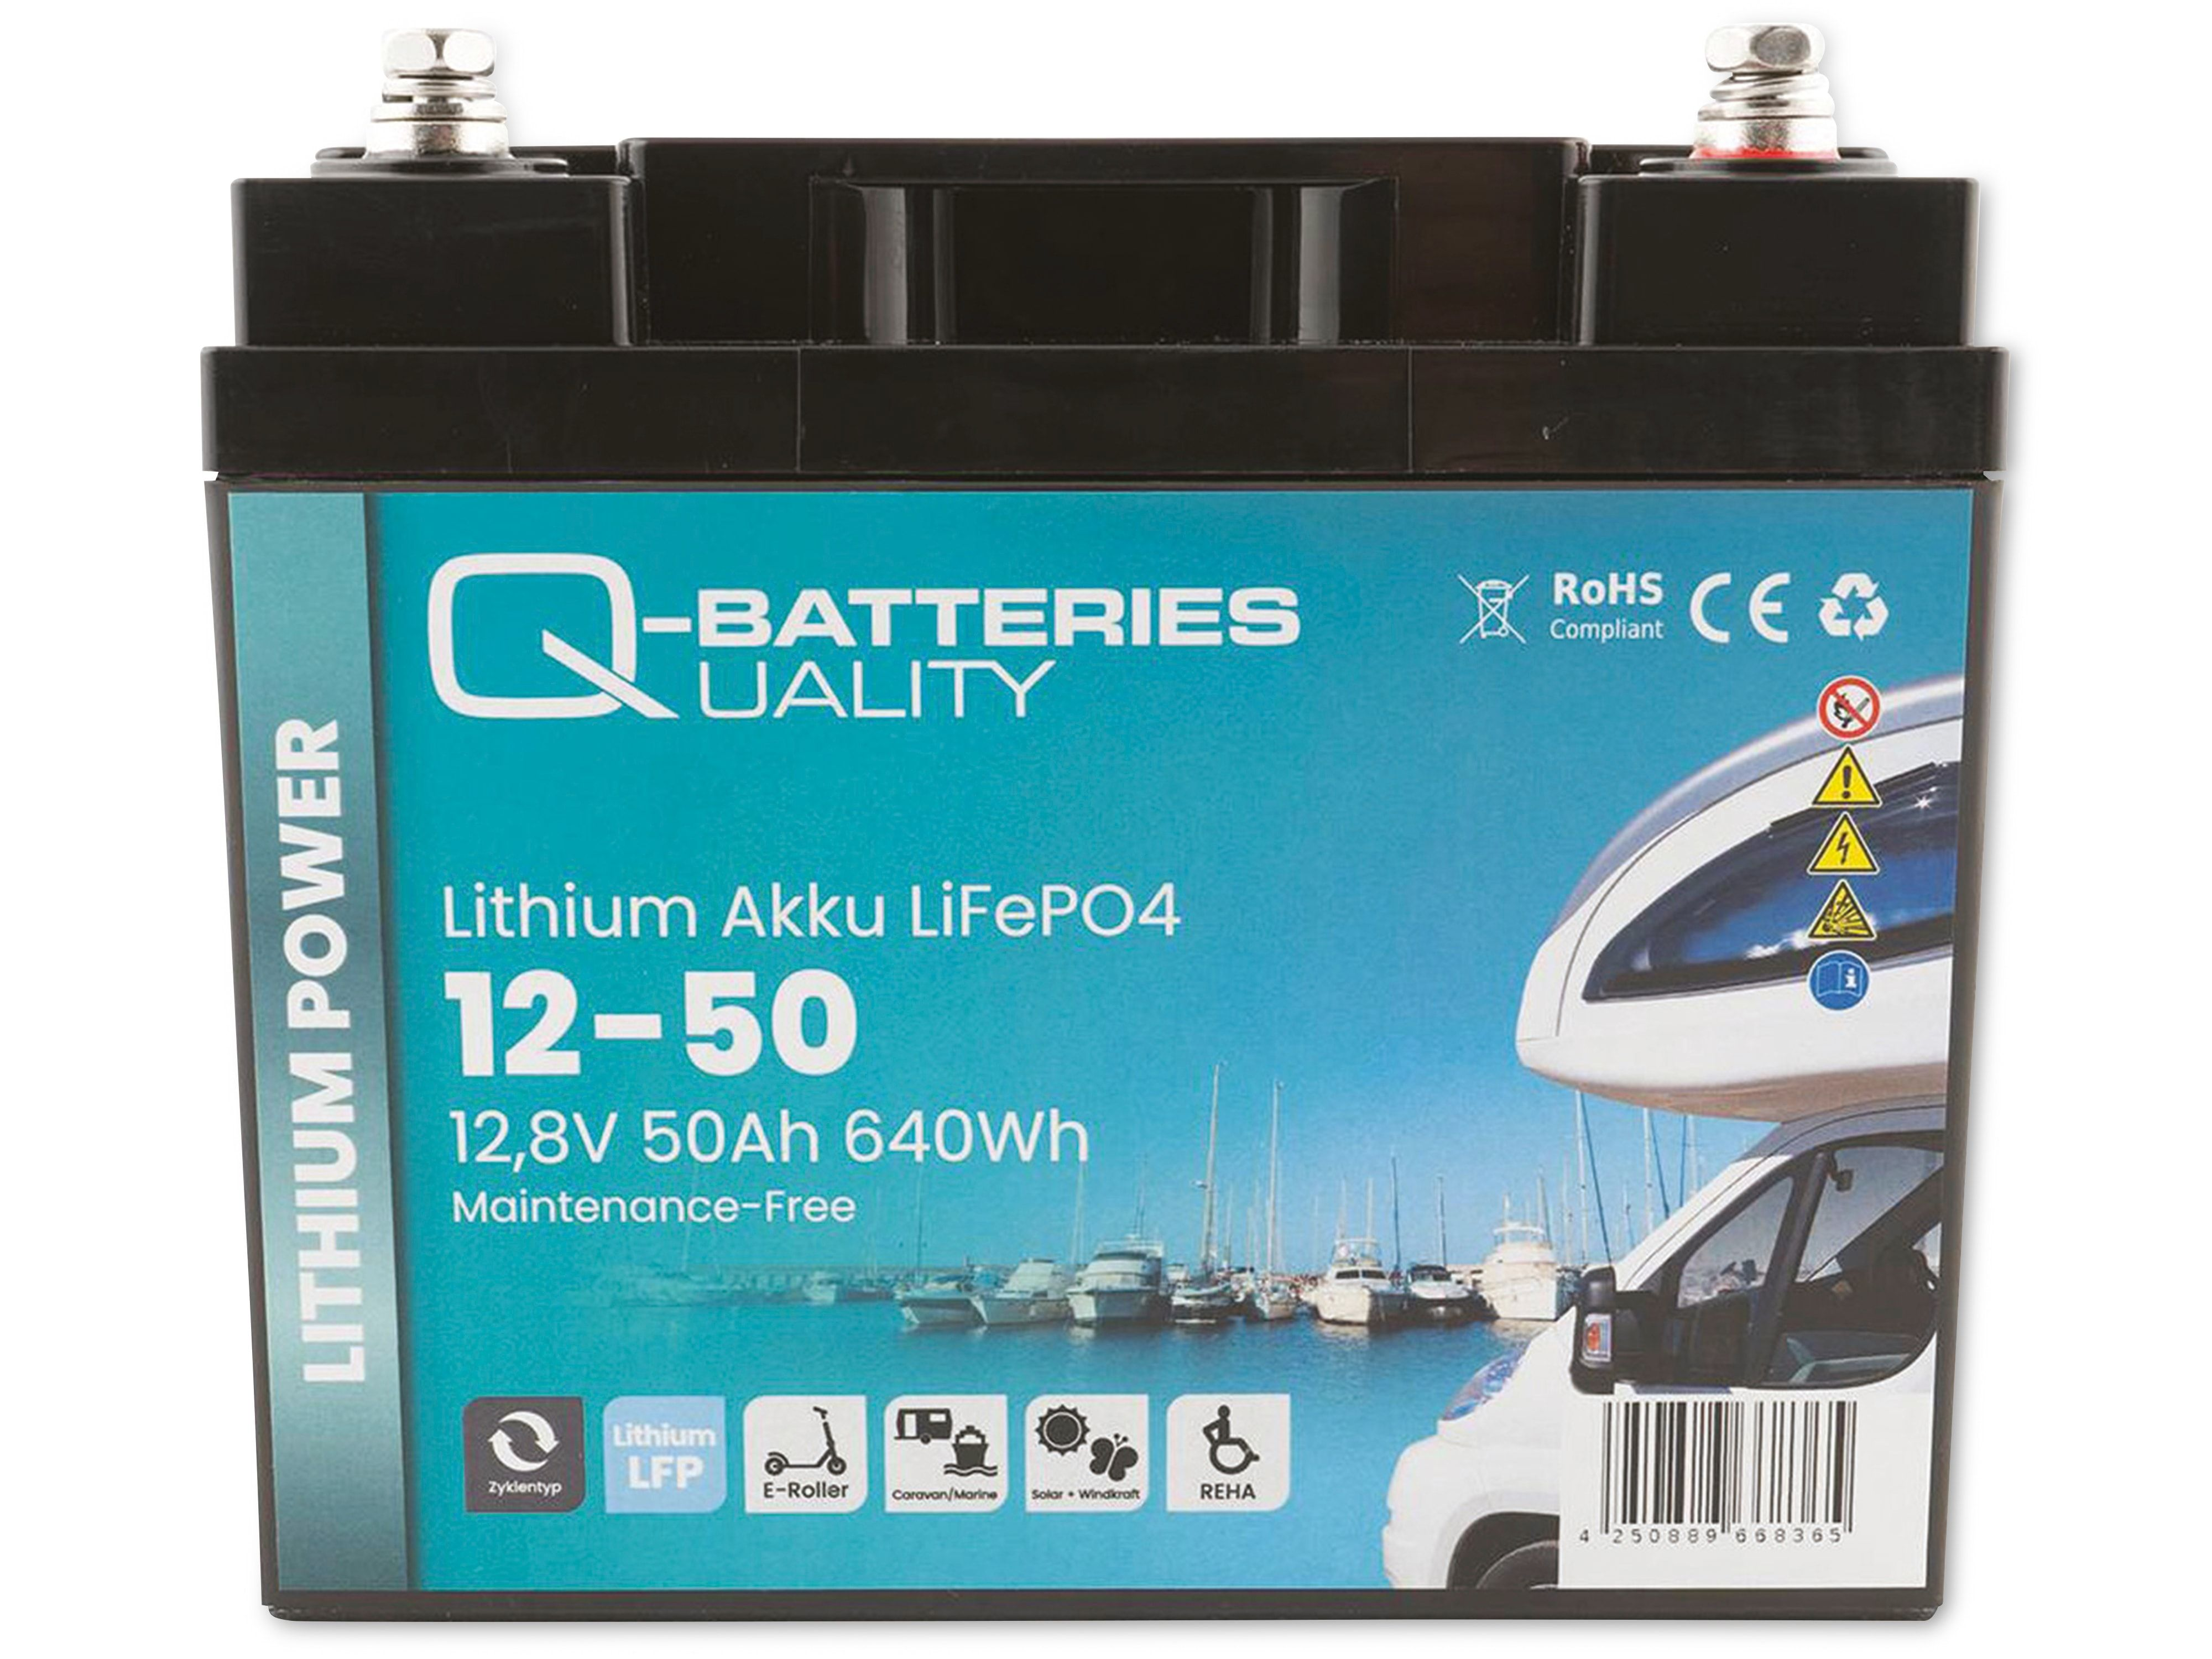 50Ah Akku Lithium-Eisenphosphat 640Wh Batterie Q-BATTERIES Lithium Akku 12-50 LiFePO4 12,8V,